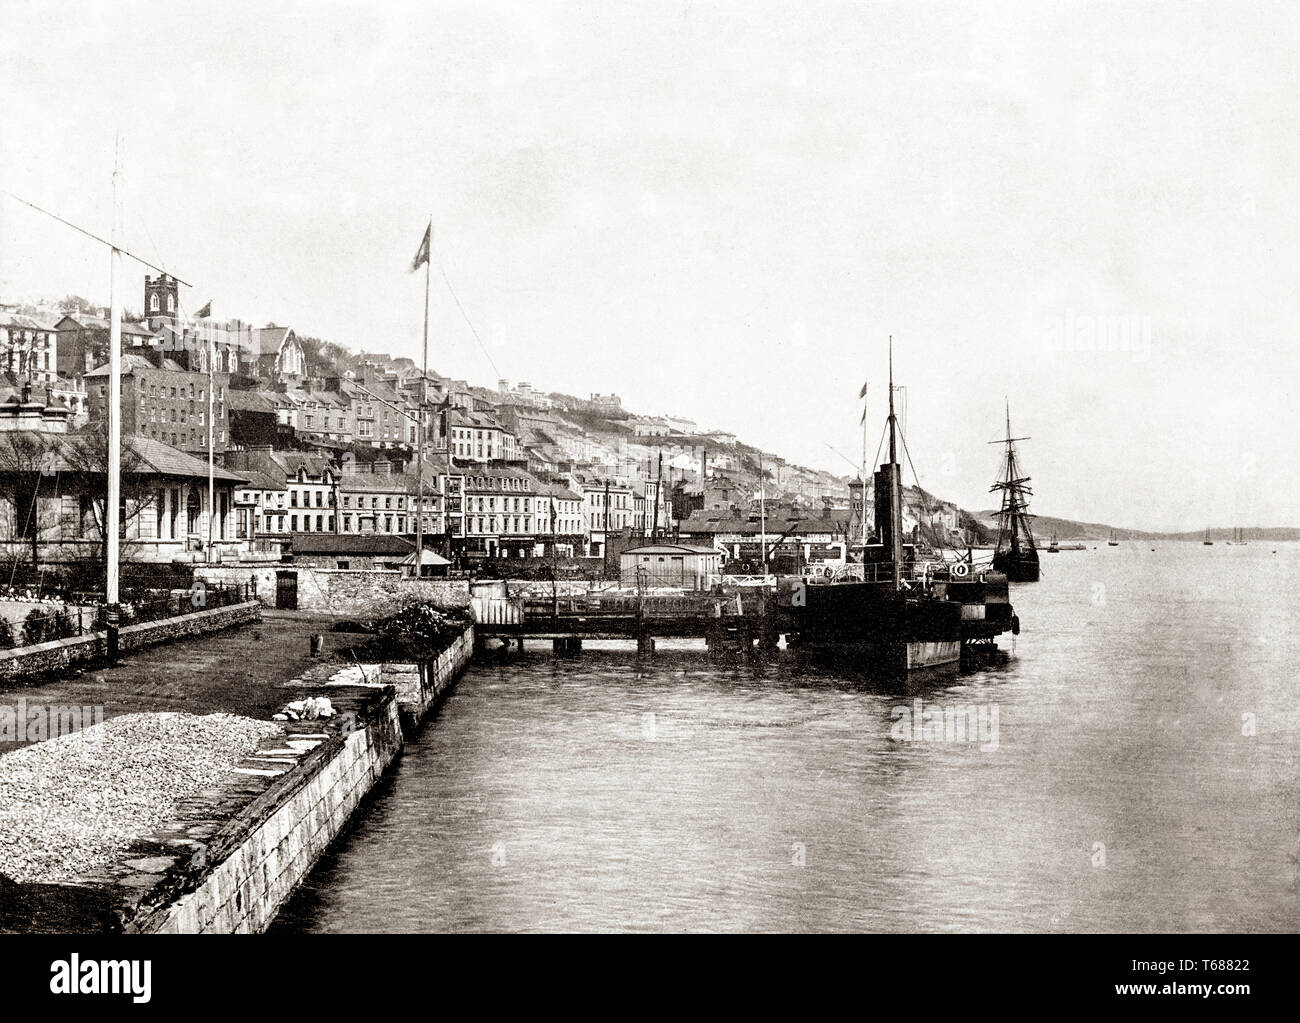 A finales del siglo XIX, vista de Queenstown, renombrado Cobh en 1920, es  una ciudad portuaria turística en la costa sur del condado de Cork, Irlanda.  Situado en el lado sur de